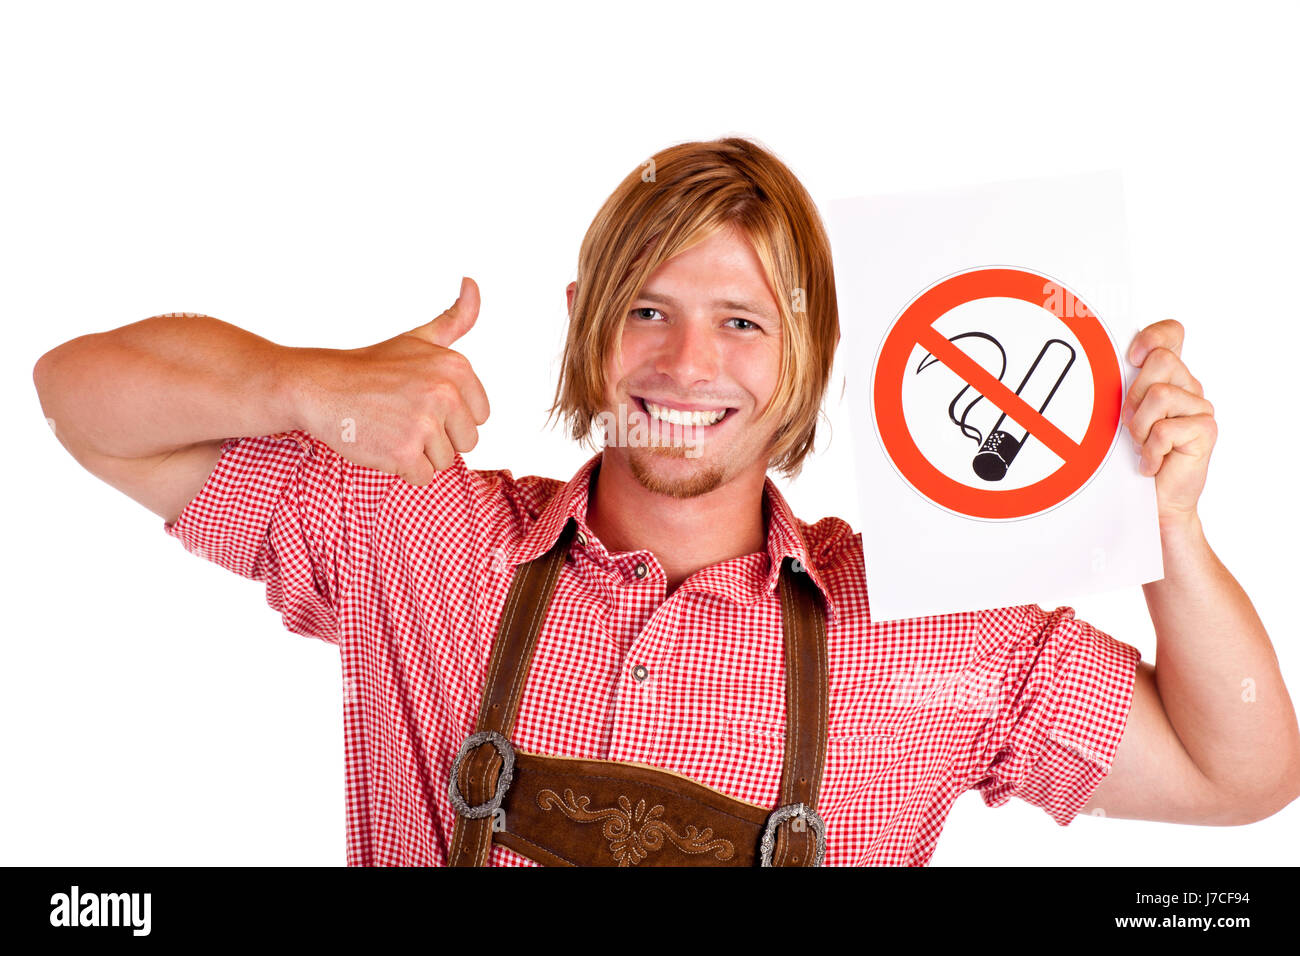 man in lederhose holds smoking ban sign Stock Photo